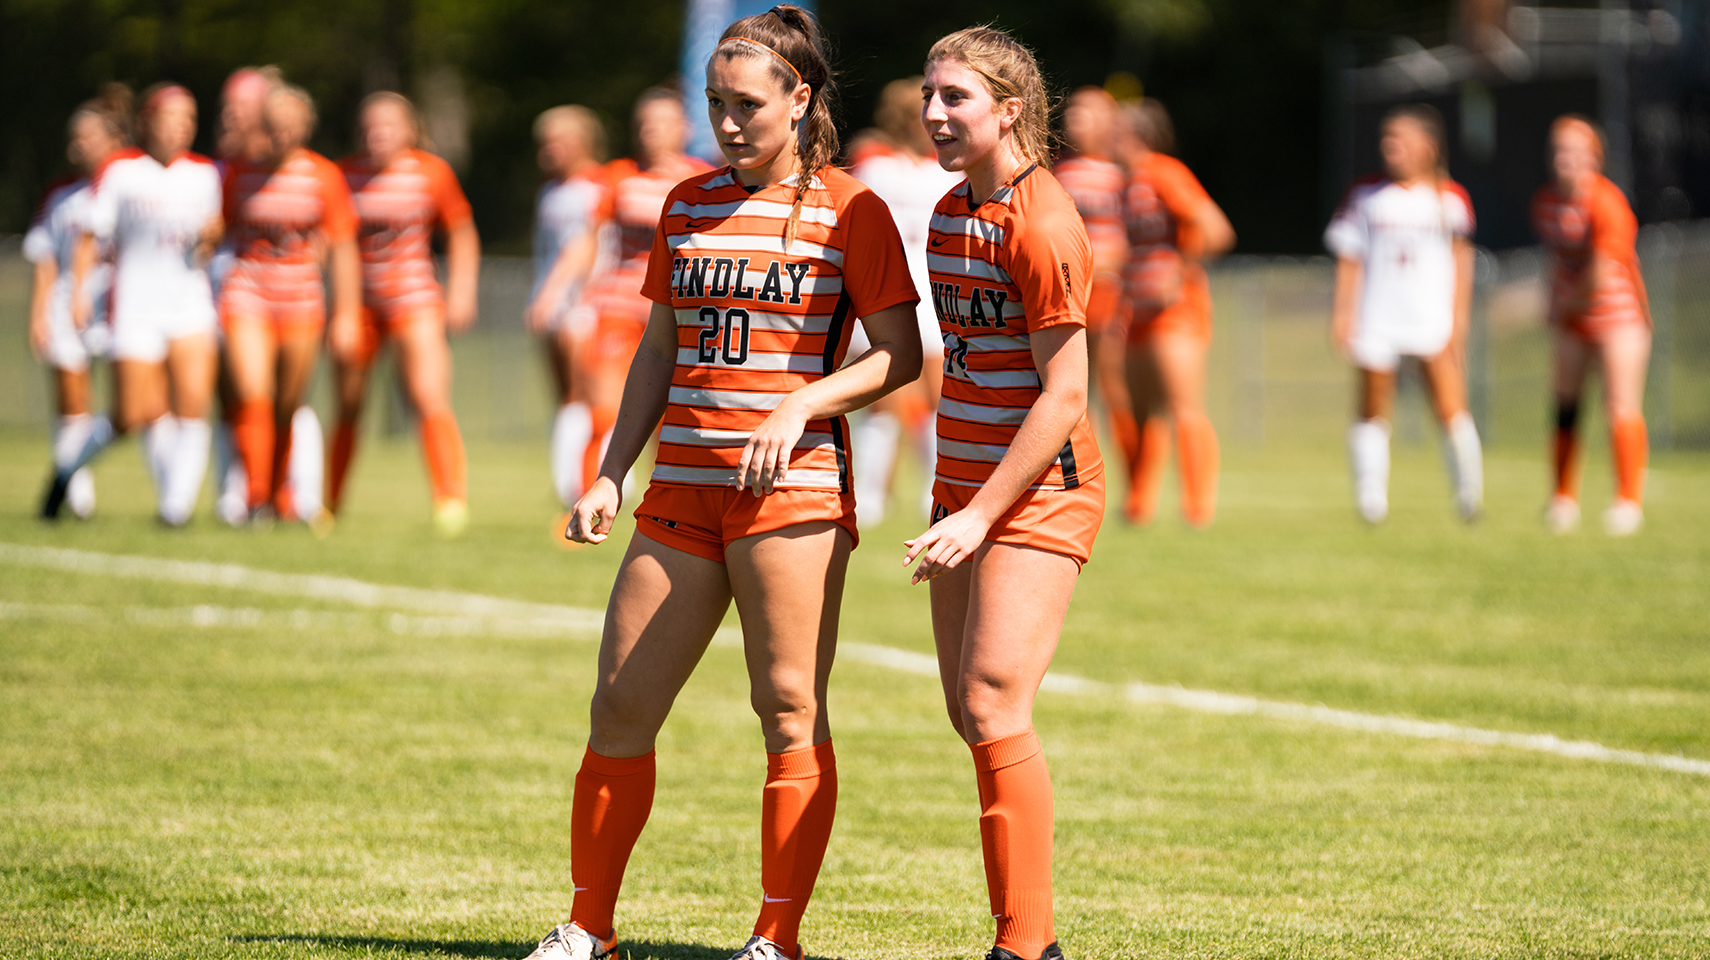 Two women's soccer players in orange jerseys talking on the field